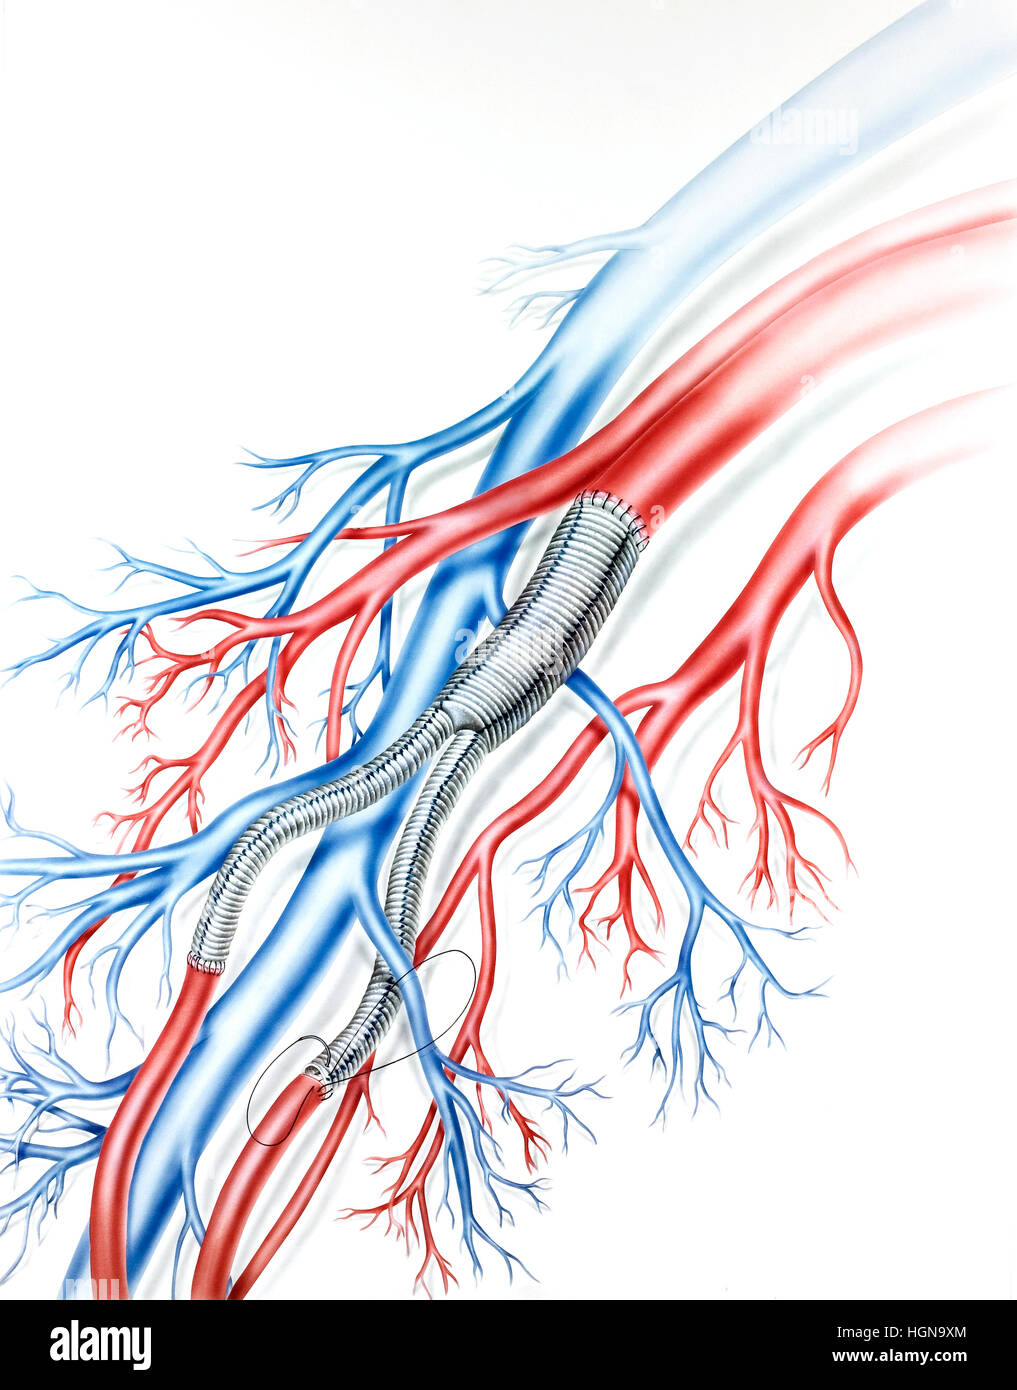 Greffes Teflon vaisseau artériel (gris) dans un poumon humain. Banque D'Images